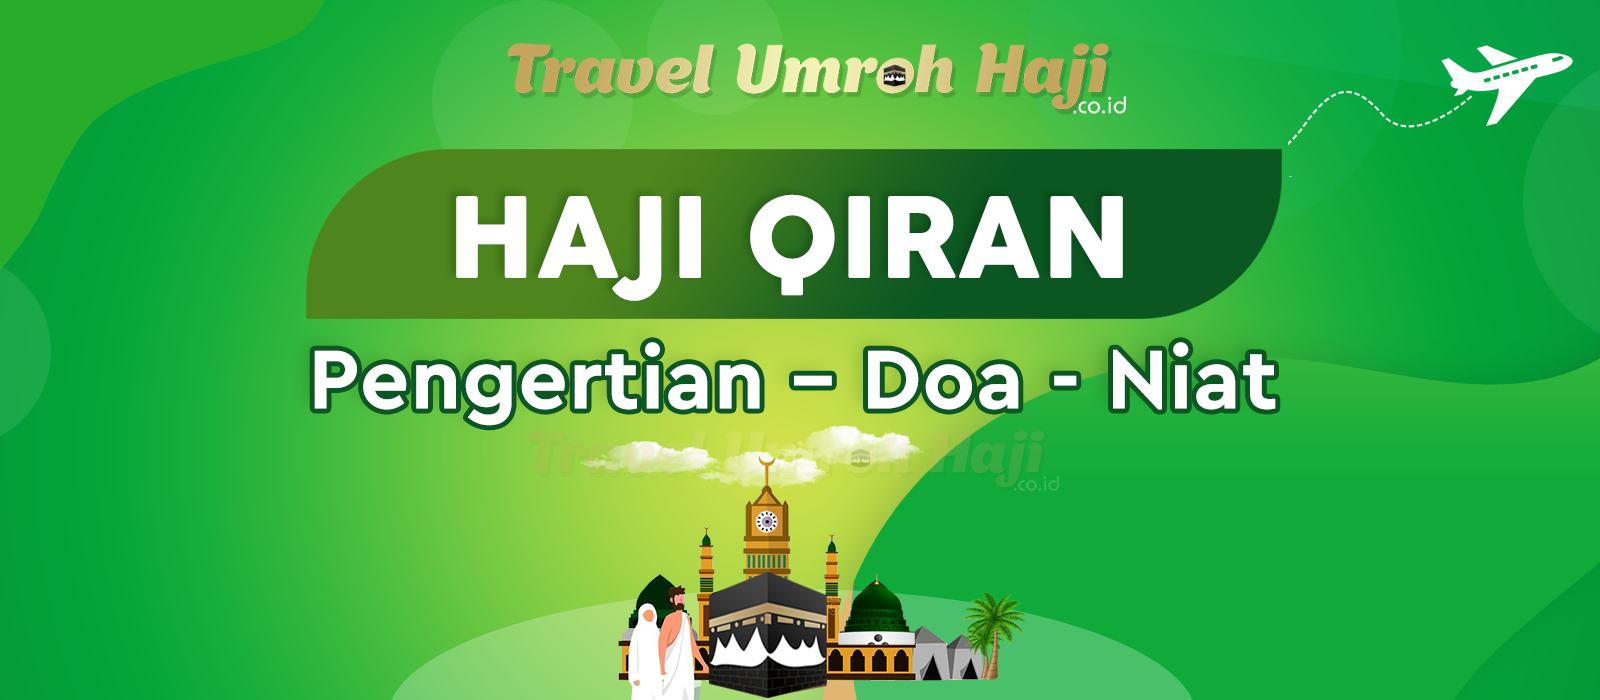 Doa Niat Haji Qiran dan Apa yang dimaksud dengan Pengertian Haji Qiran?